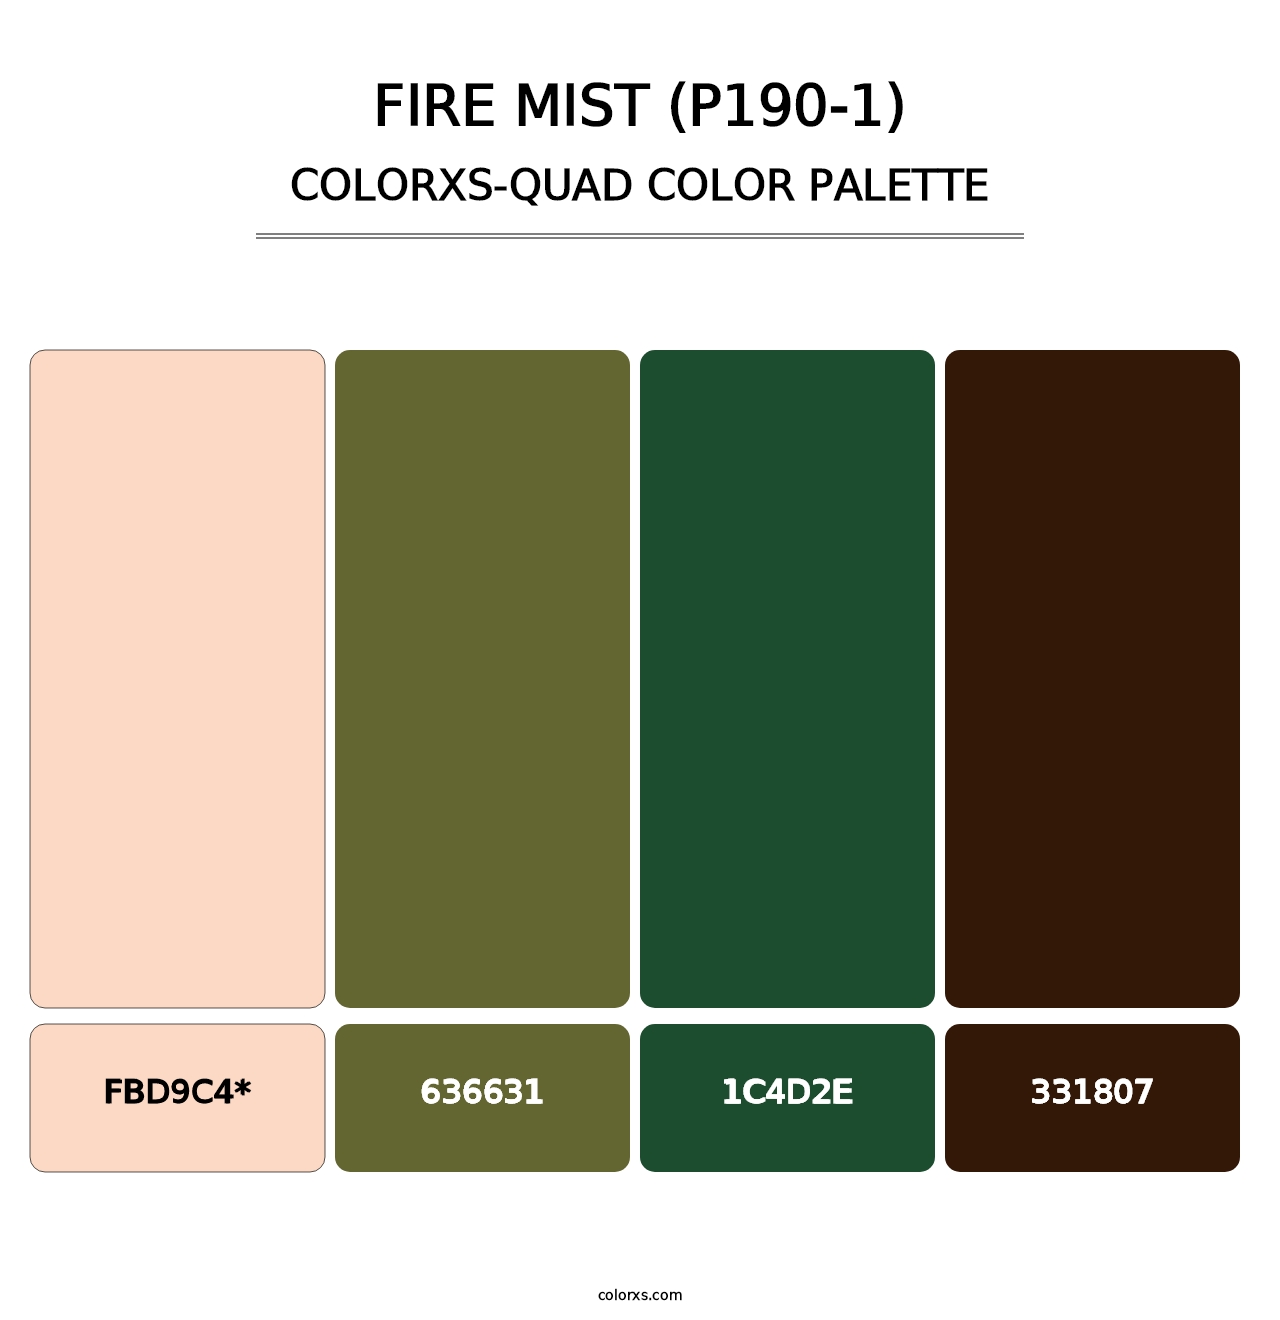 Fire Mist (P190-1) - Colorxs Quad Palette